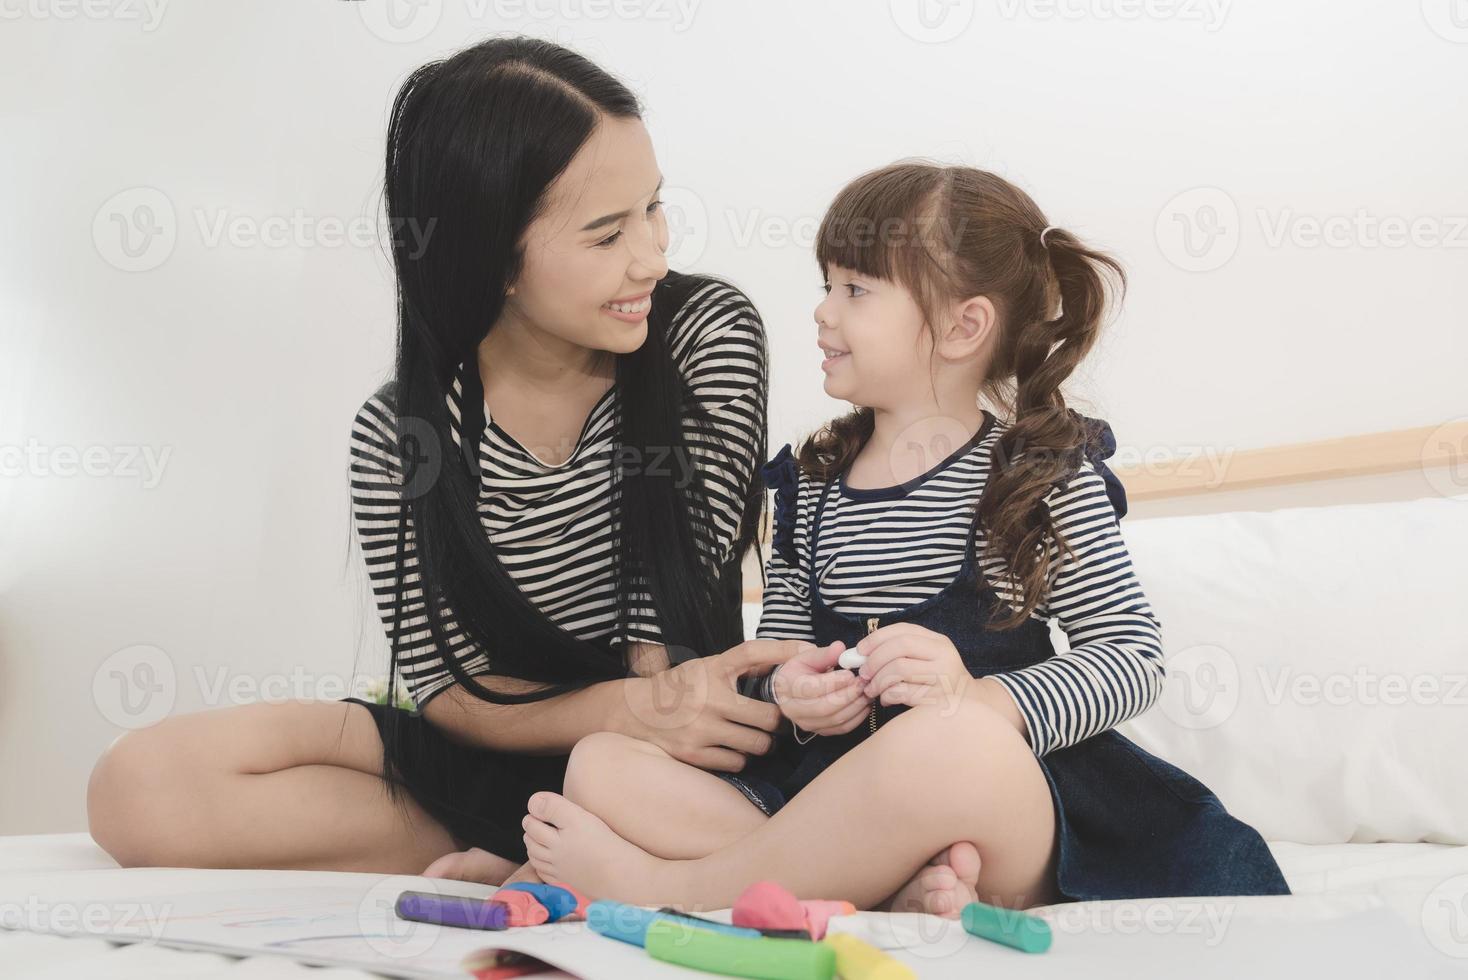 gelukkige liefdevolle familie, Aziatische jonge moeder speelt met haar dochter in de kinderkamer. foto-ontwerp voor familie, kinderen en gelukkige mensen concept. foto